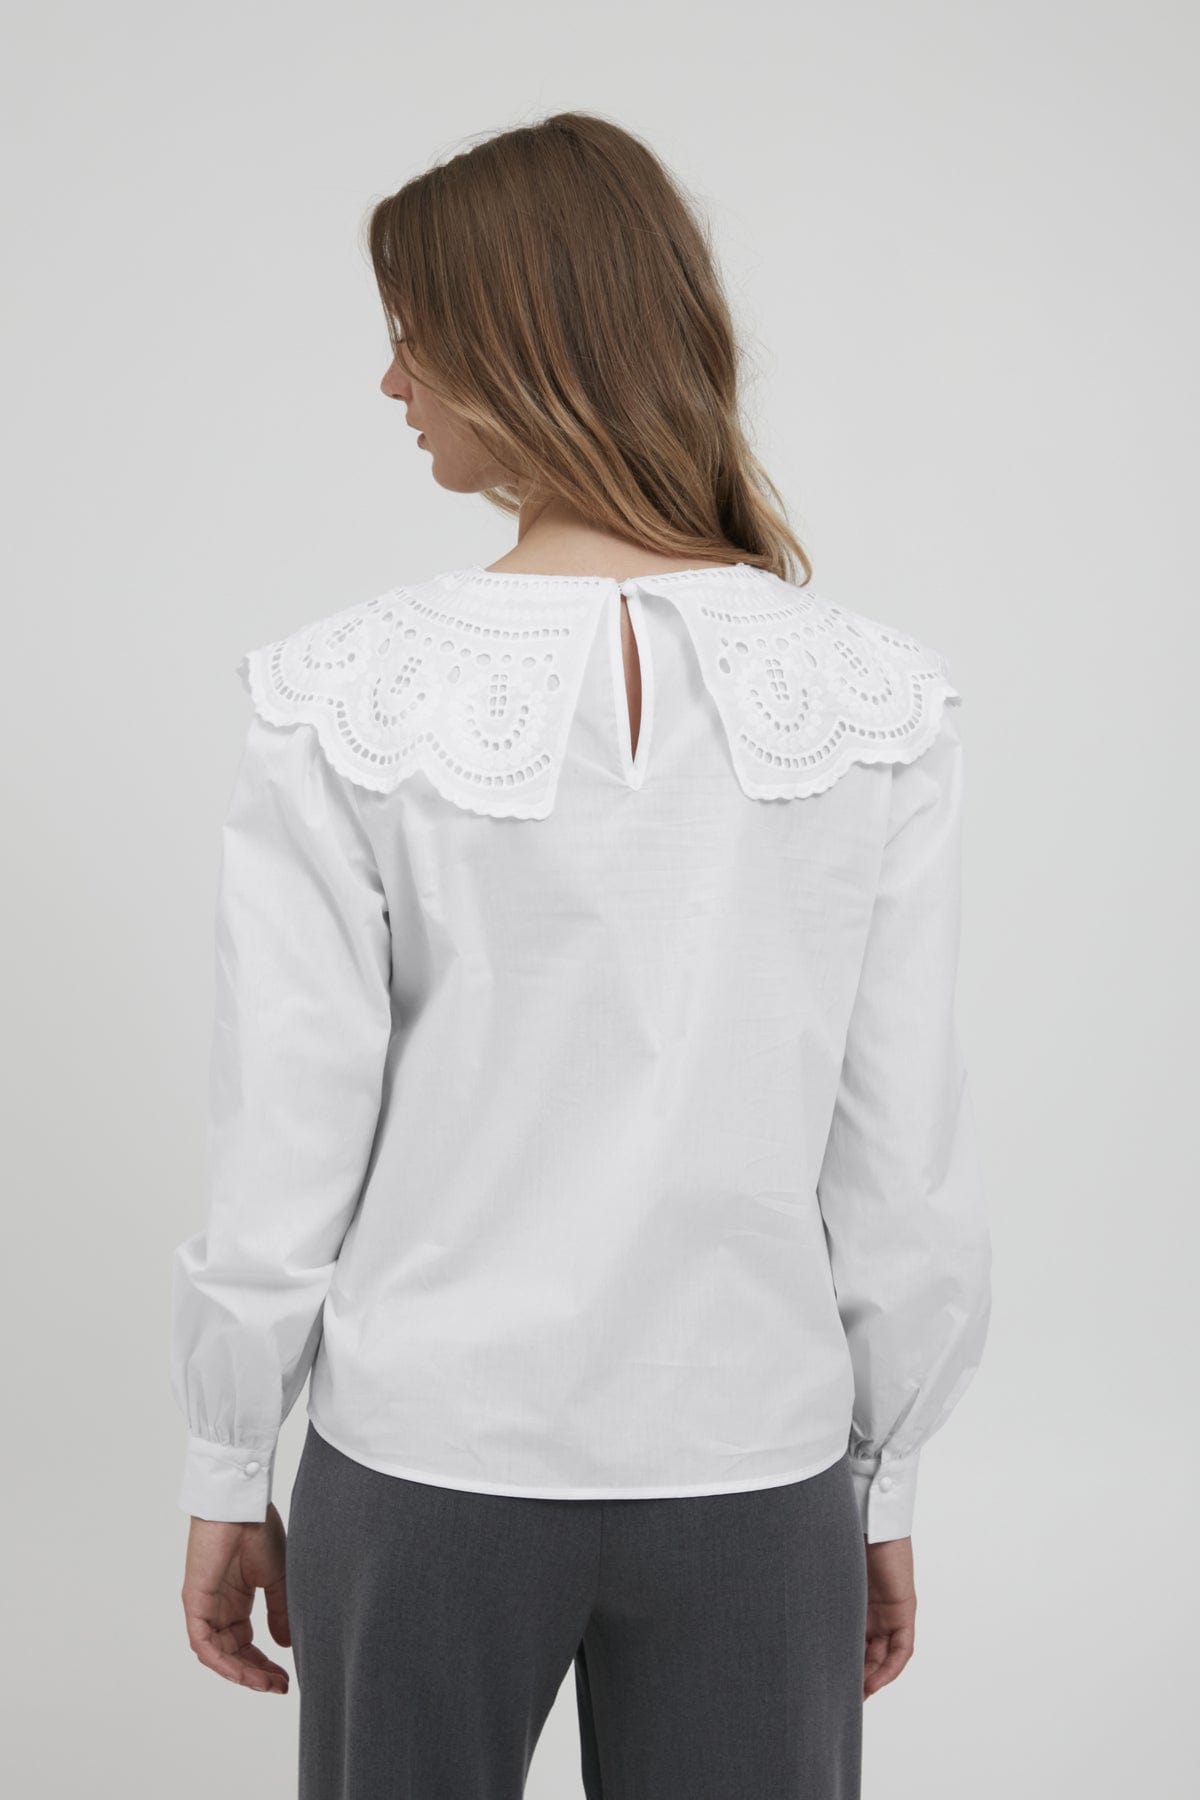 Fascinate Præstation Spanien B-Young - Skjorte med krave, hvid - 20810156-110601